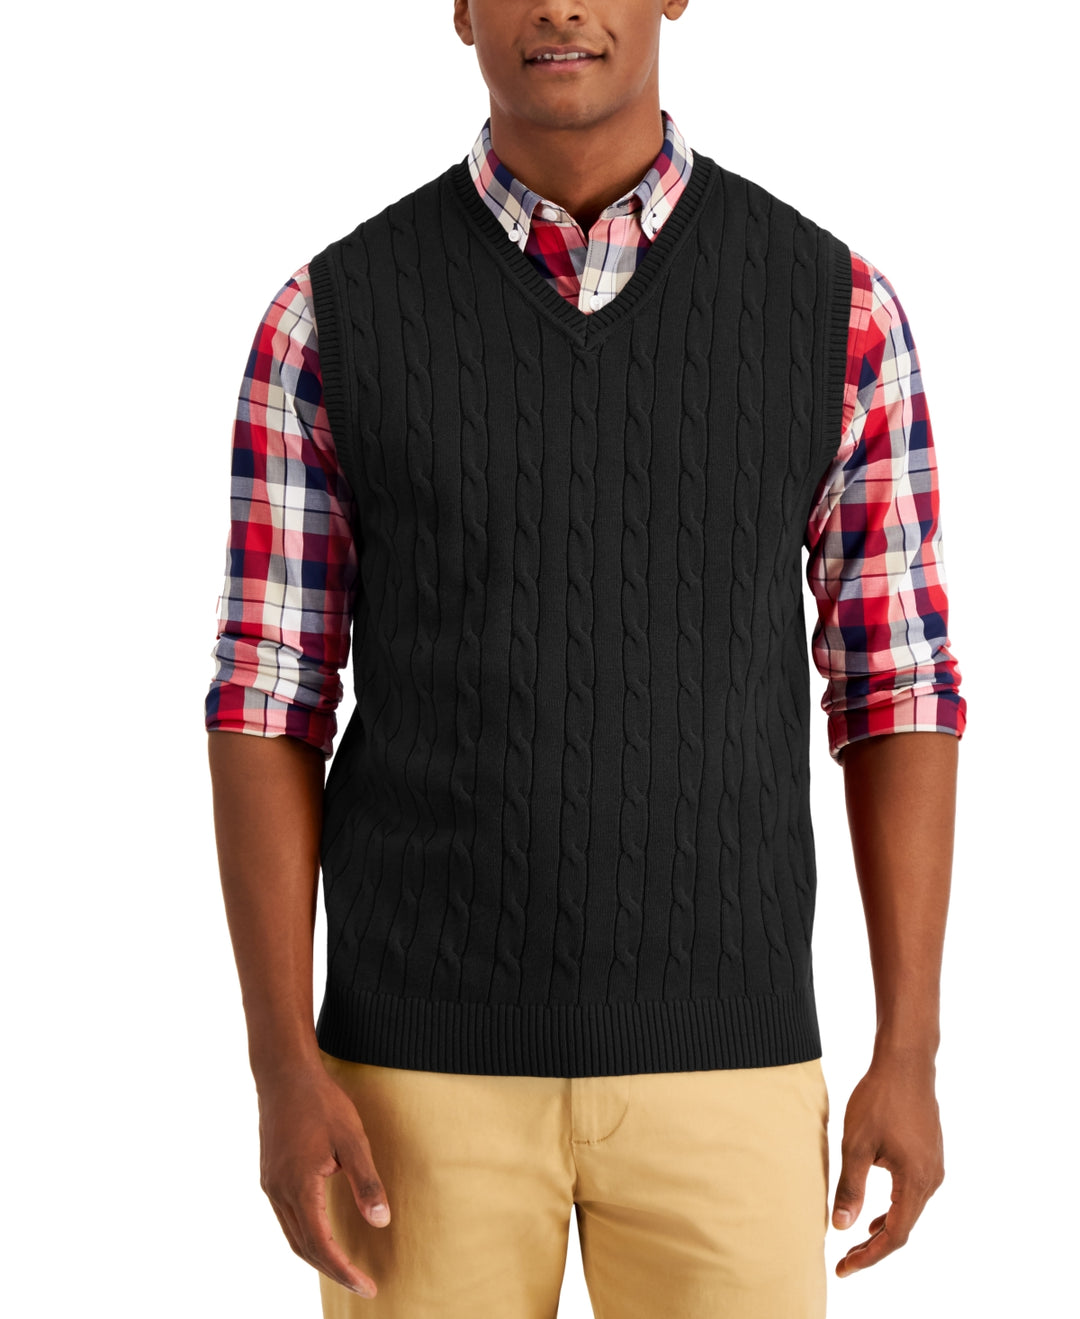 Club Room Men's Cable Knit Cotton Sweater Vest Black